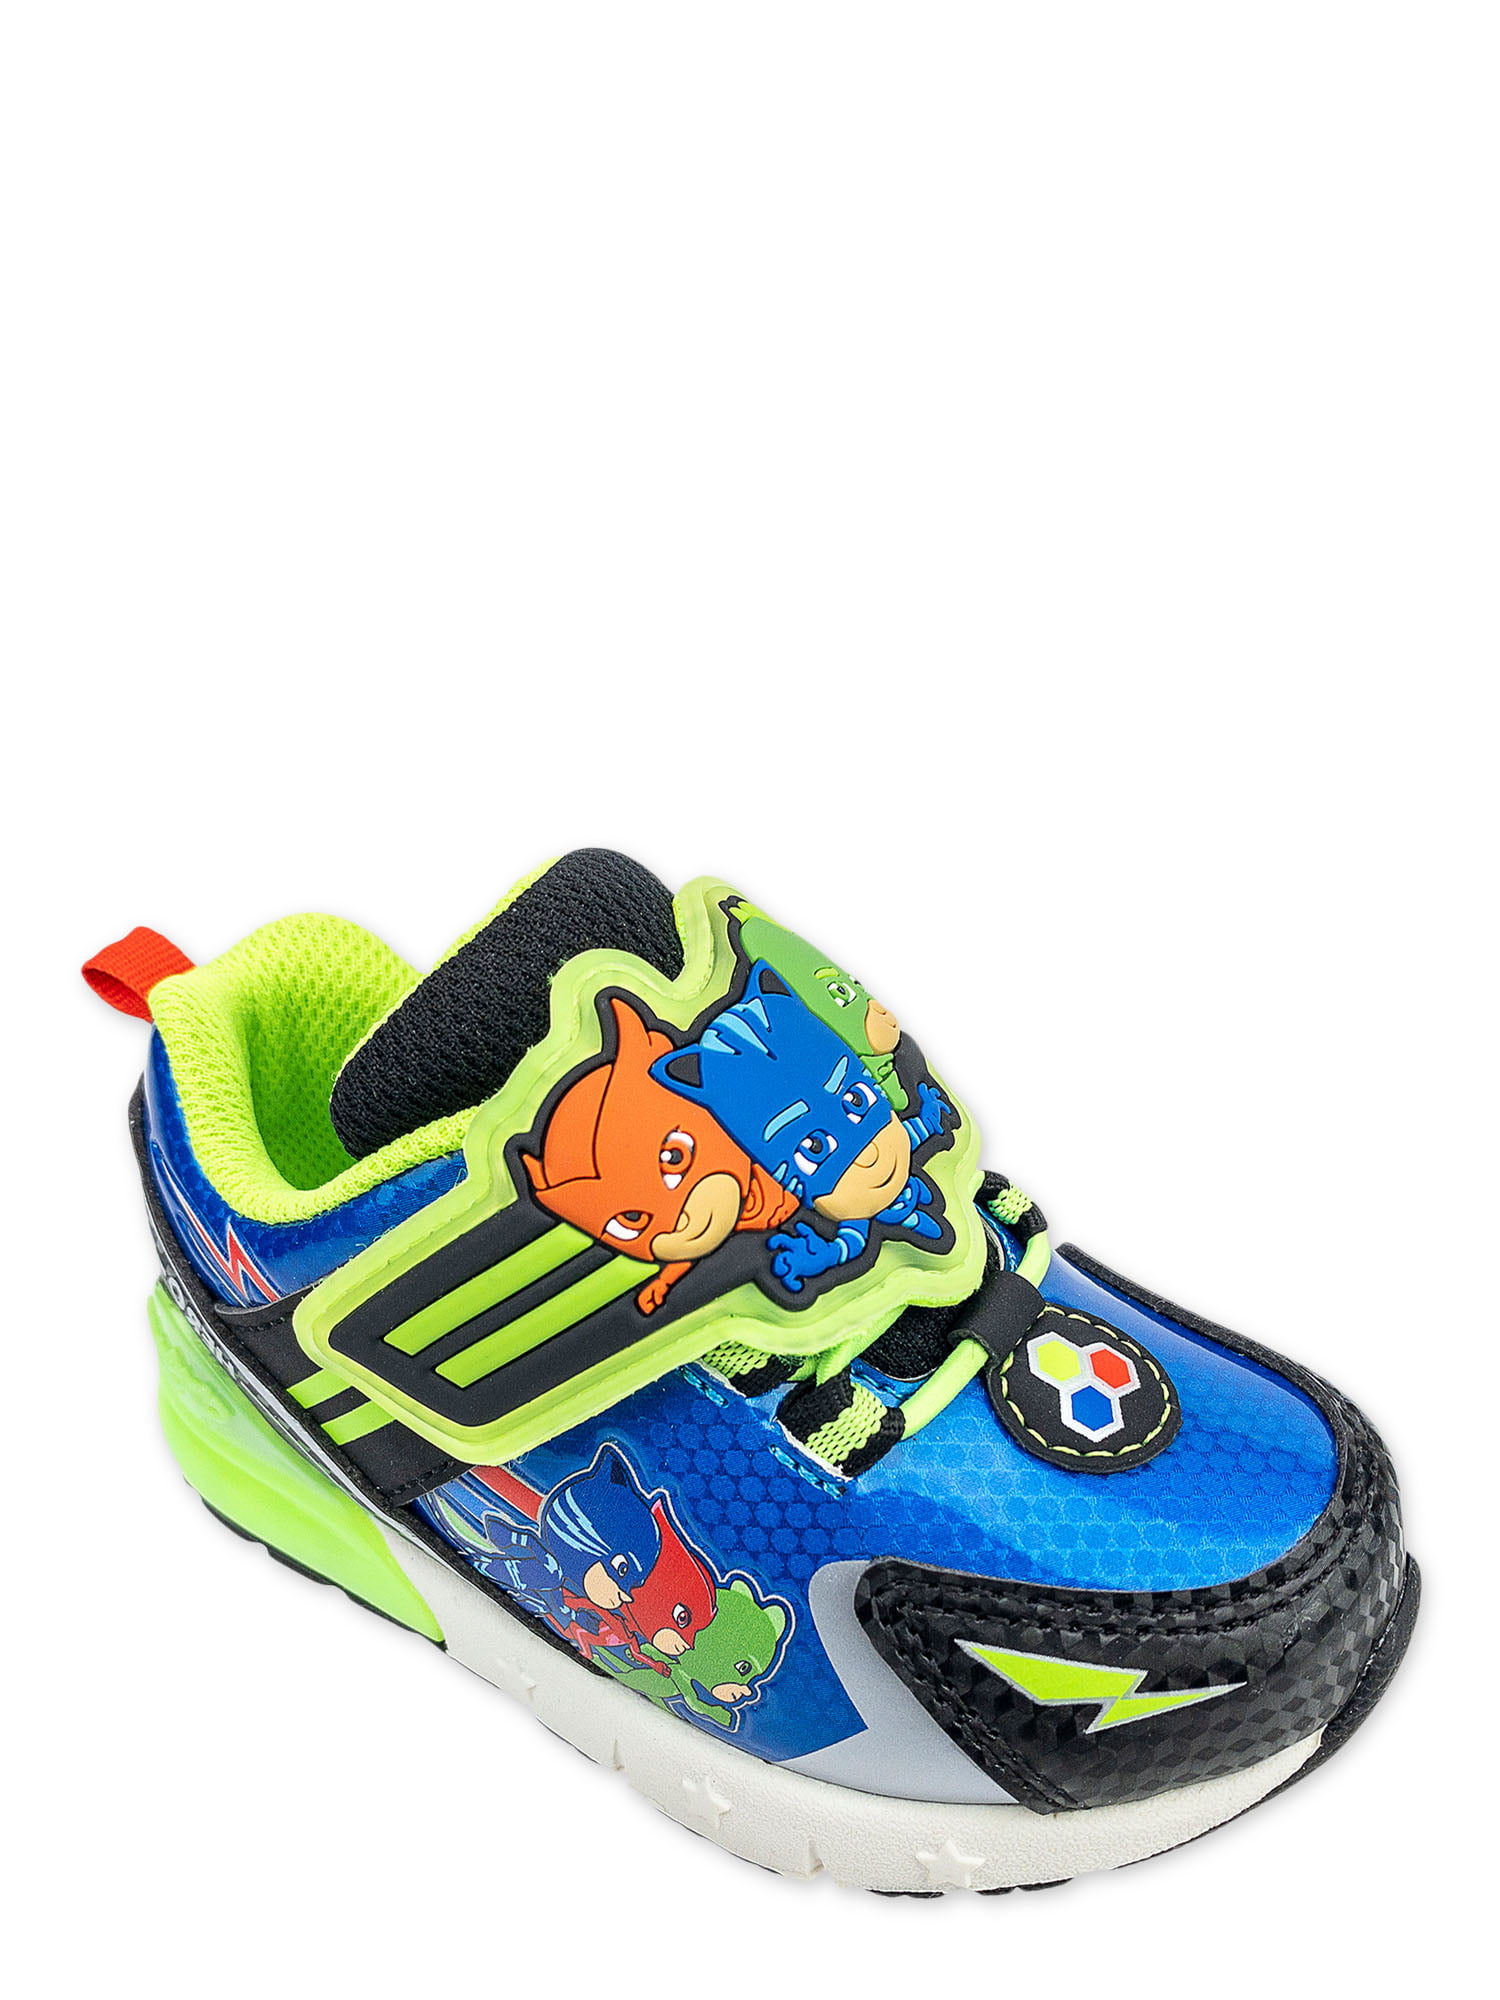 Boys PJ Masks Sports Sandals Kids Infants Lightweight Easy Fasten Summer Shoes 